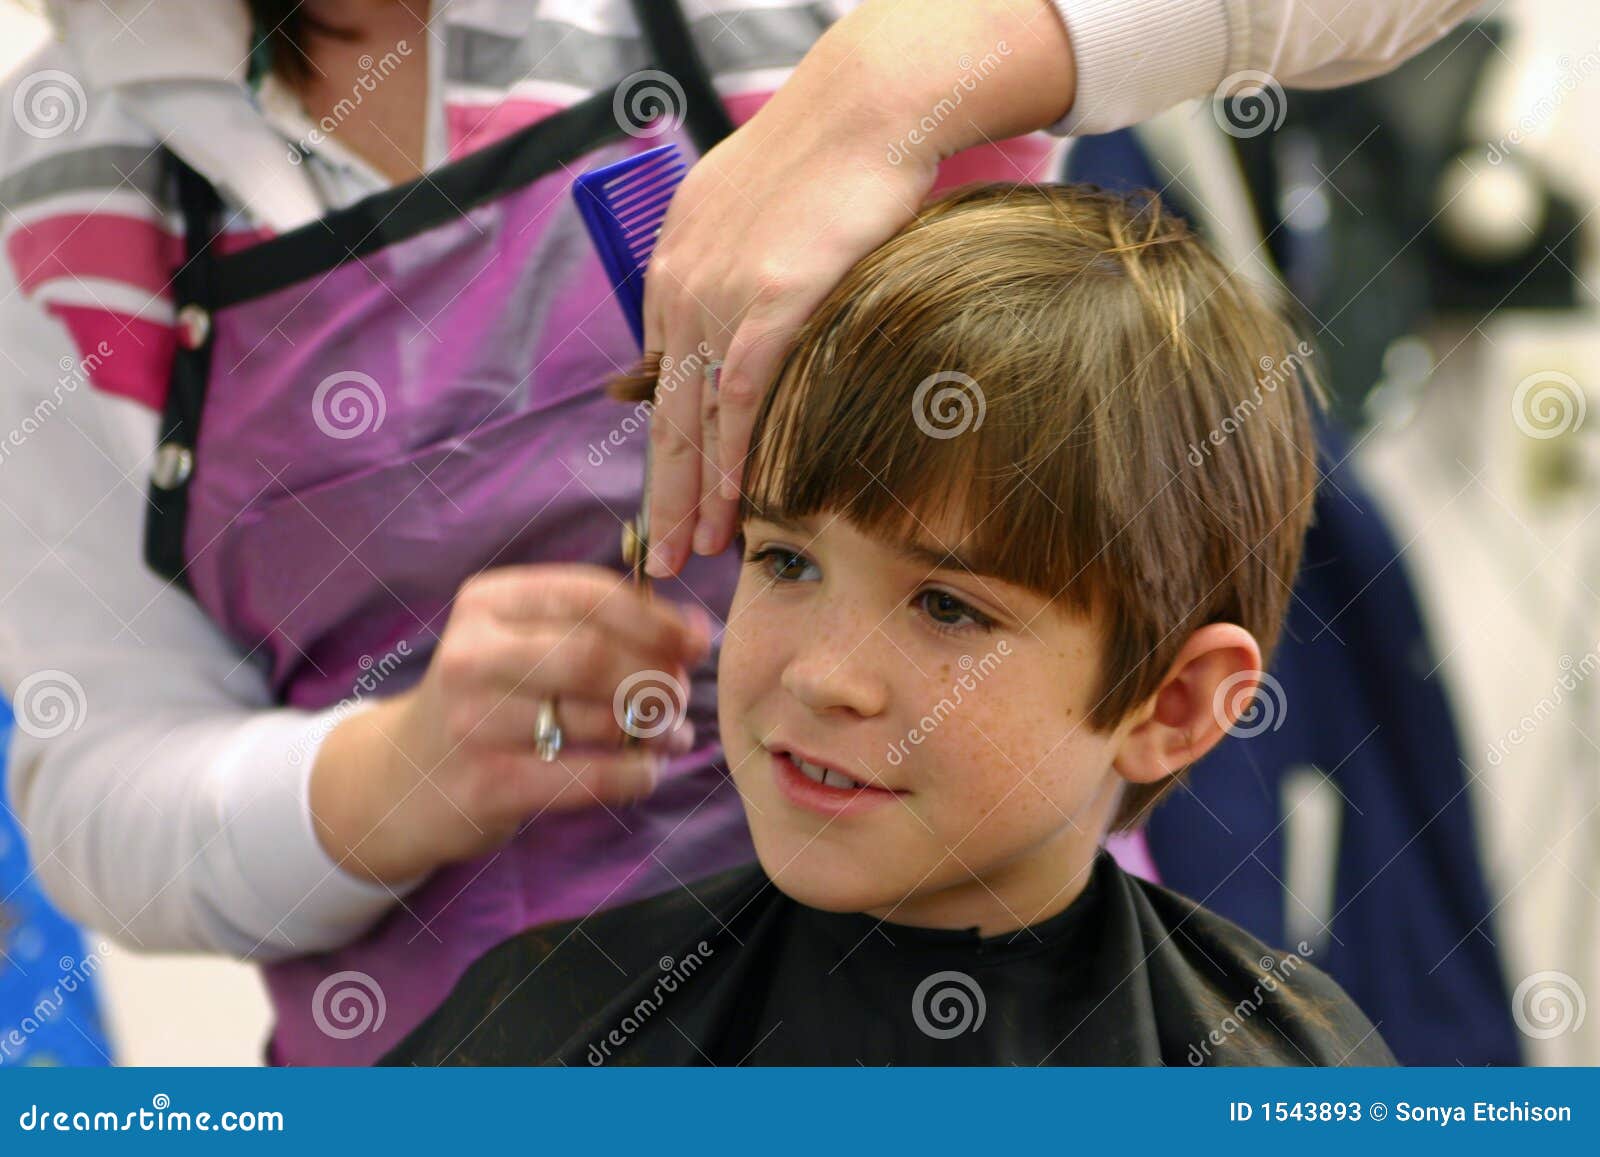 corte de cabelo de menino social